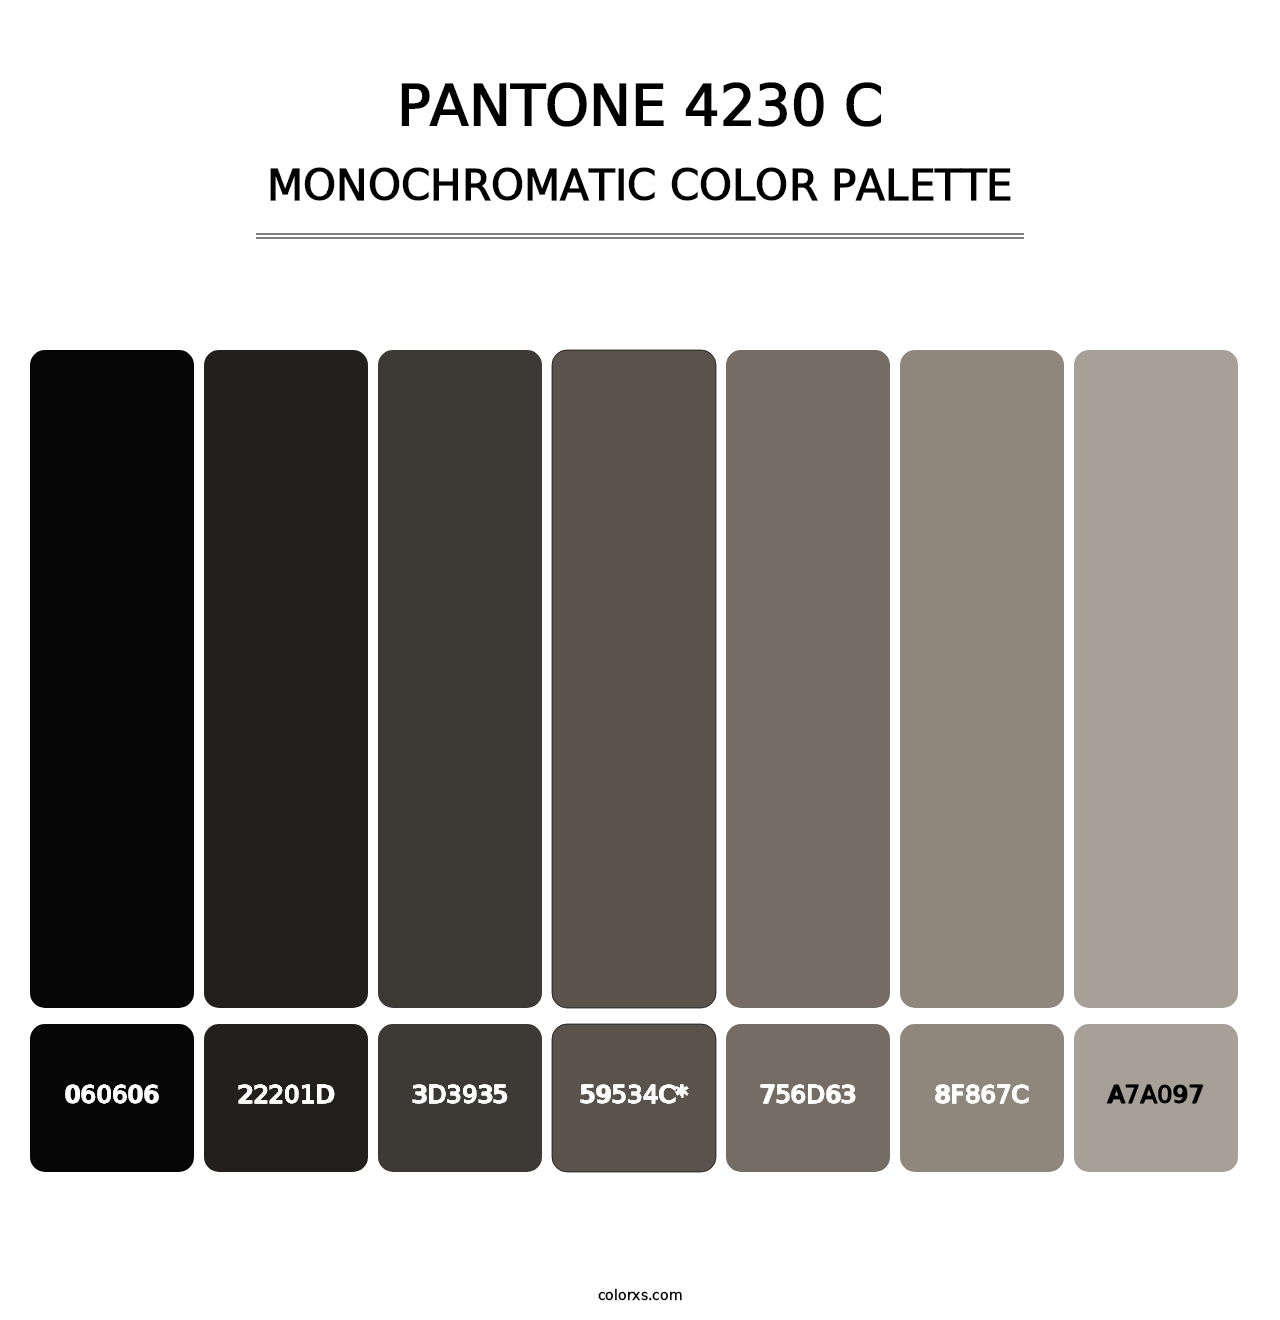 PANTONE 4230 C - Monochromatic Color Palette